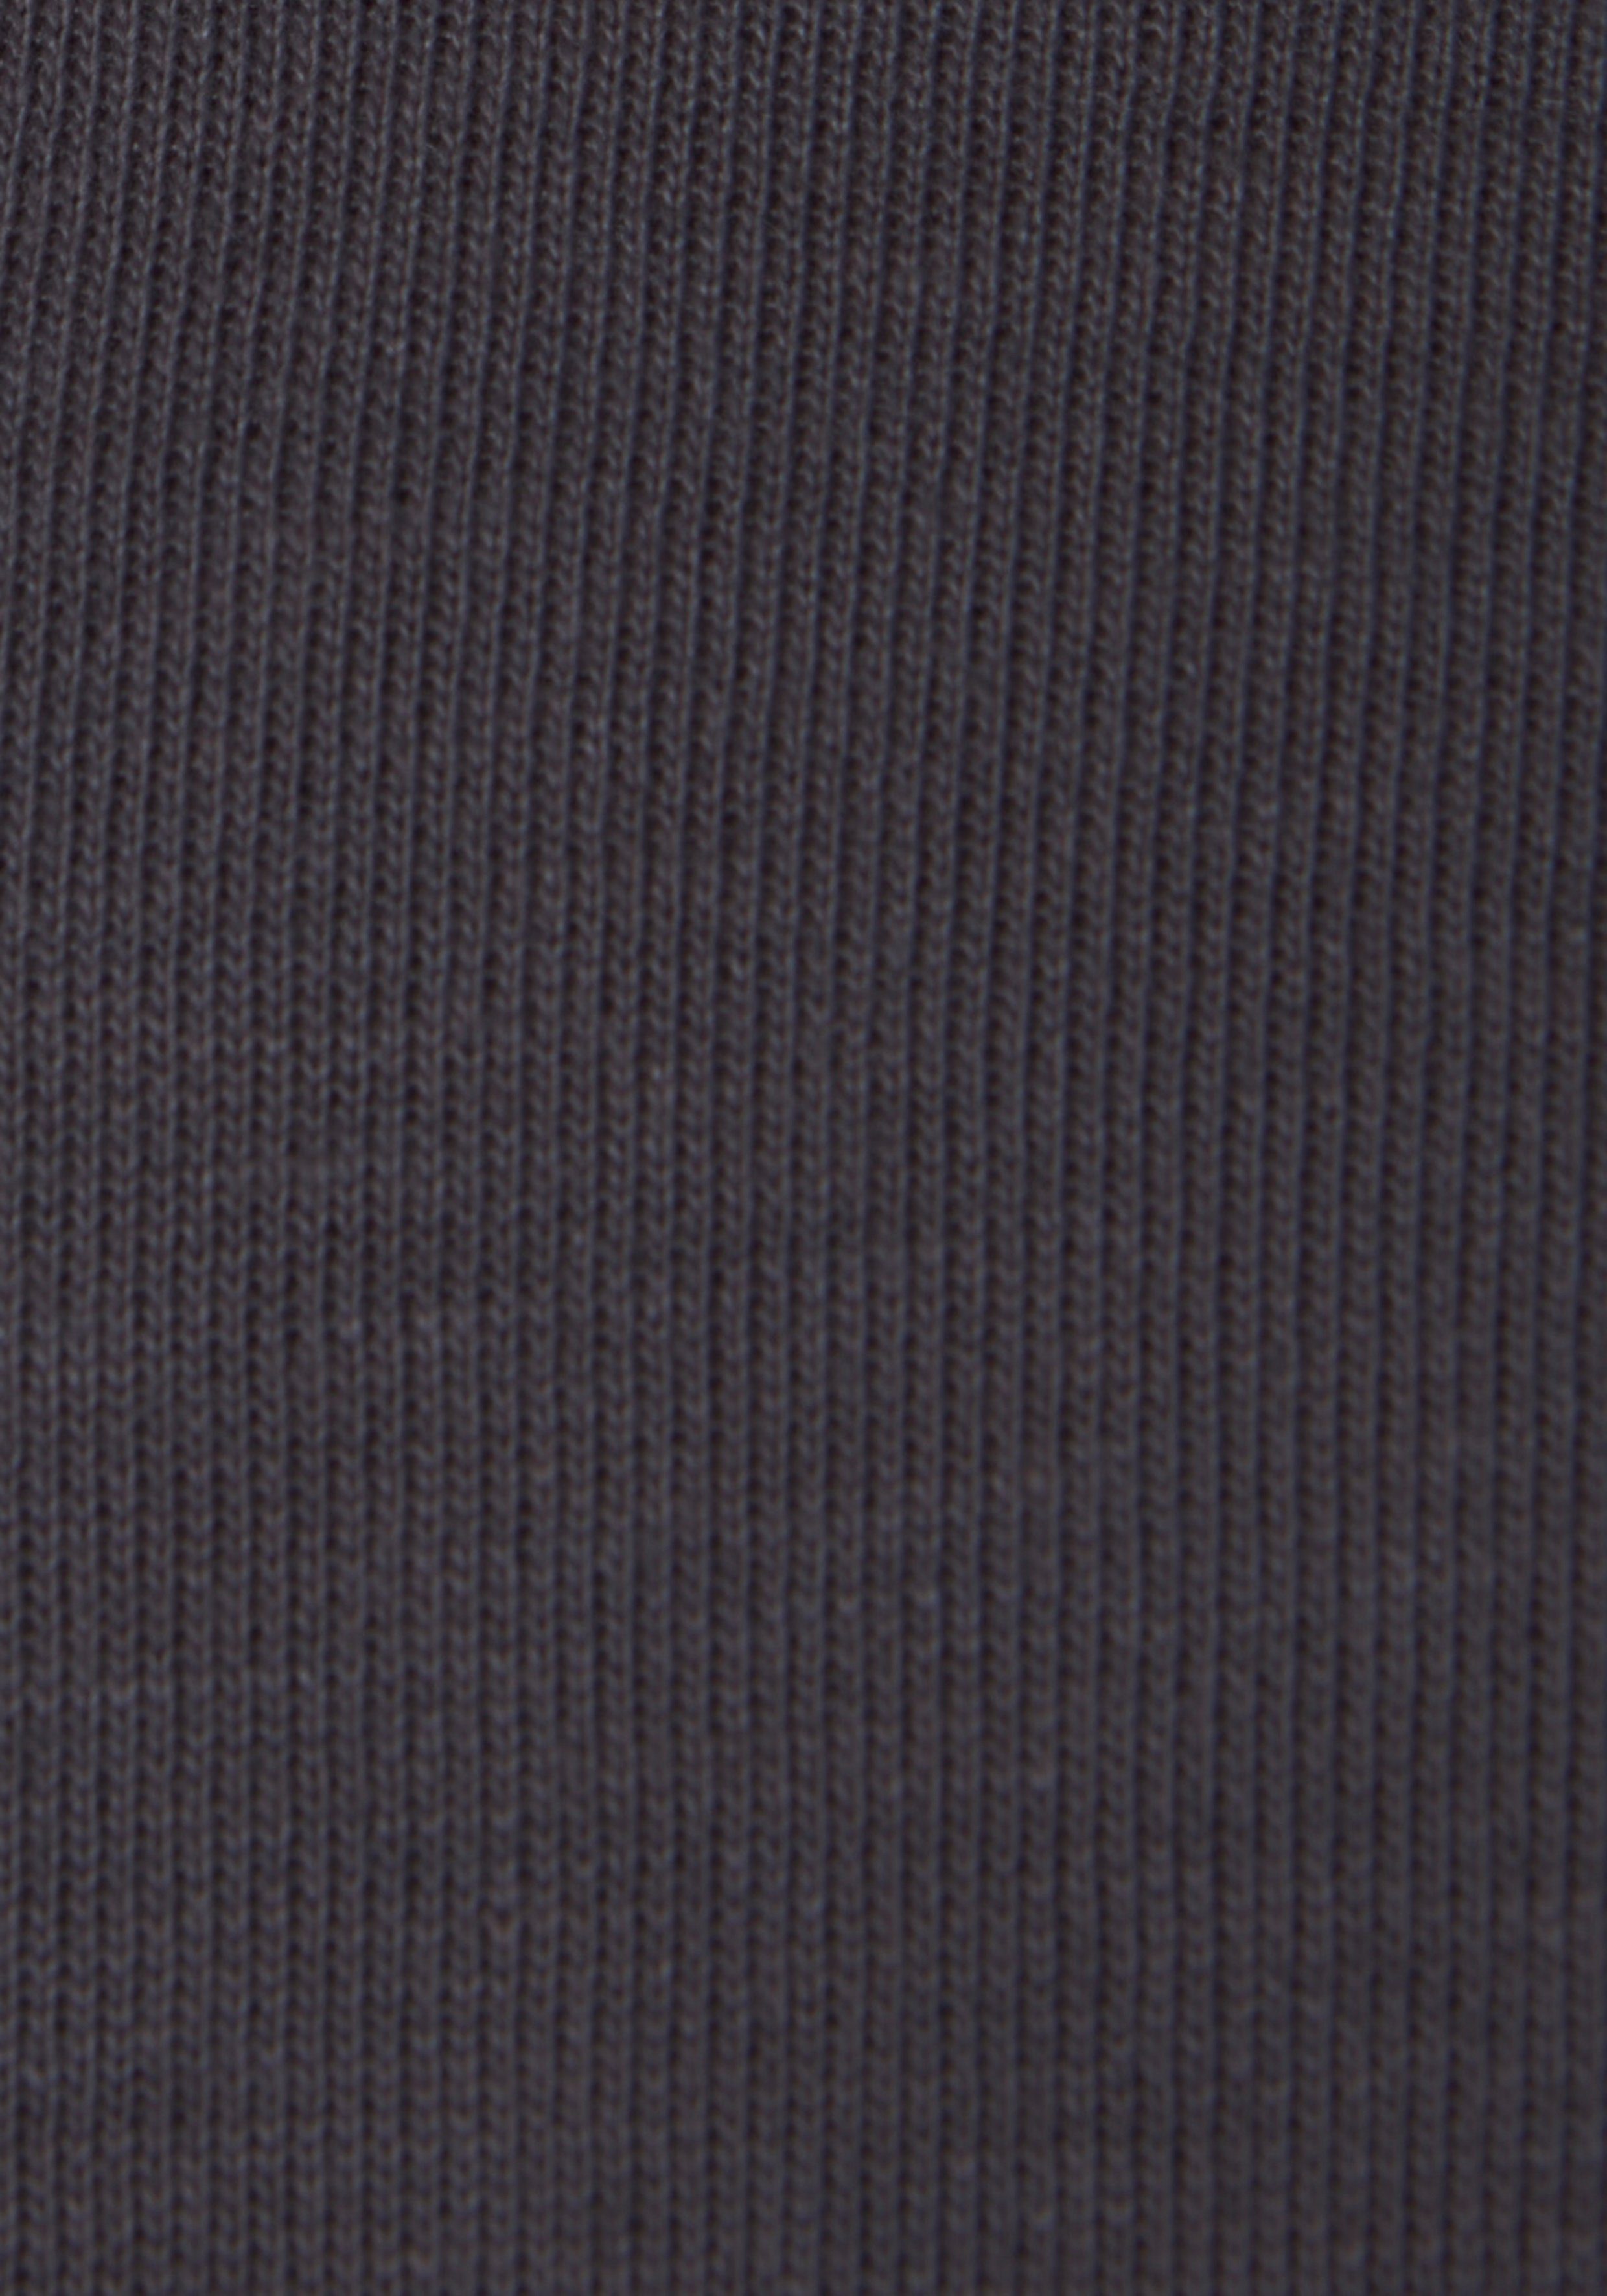 Bench. Loungewear Sweatshirt mit und Loungeanzug Stickerei, stone Logodruck